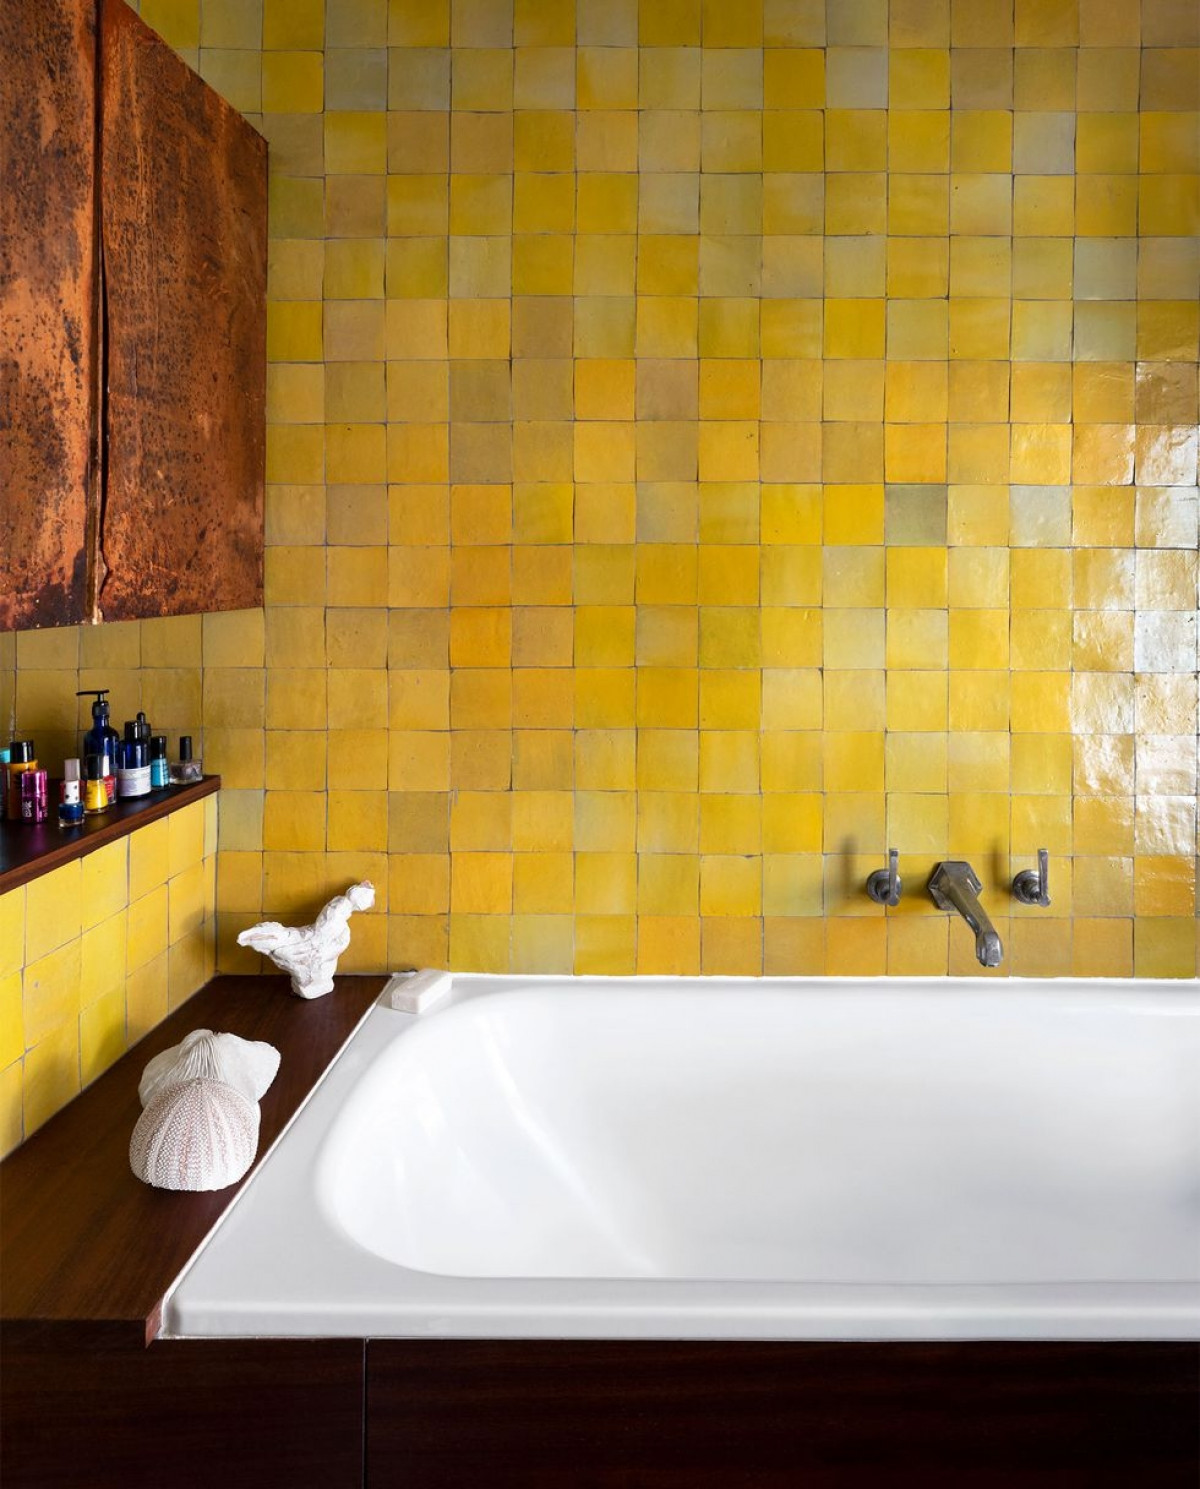 Tường phòng tắm cũng sử dụng màu vàng, nổi bật với sắc trắng của bồn tắm./.